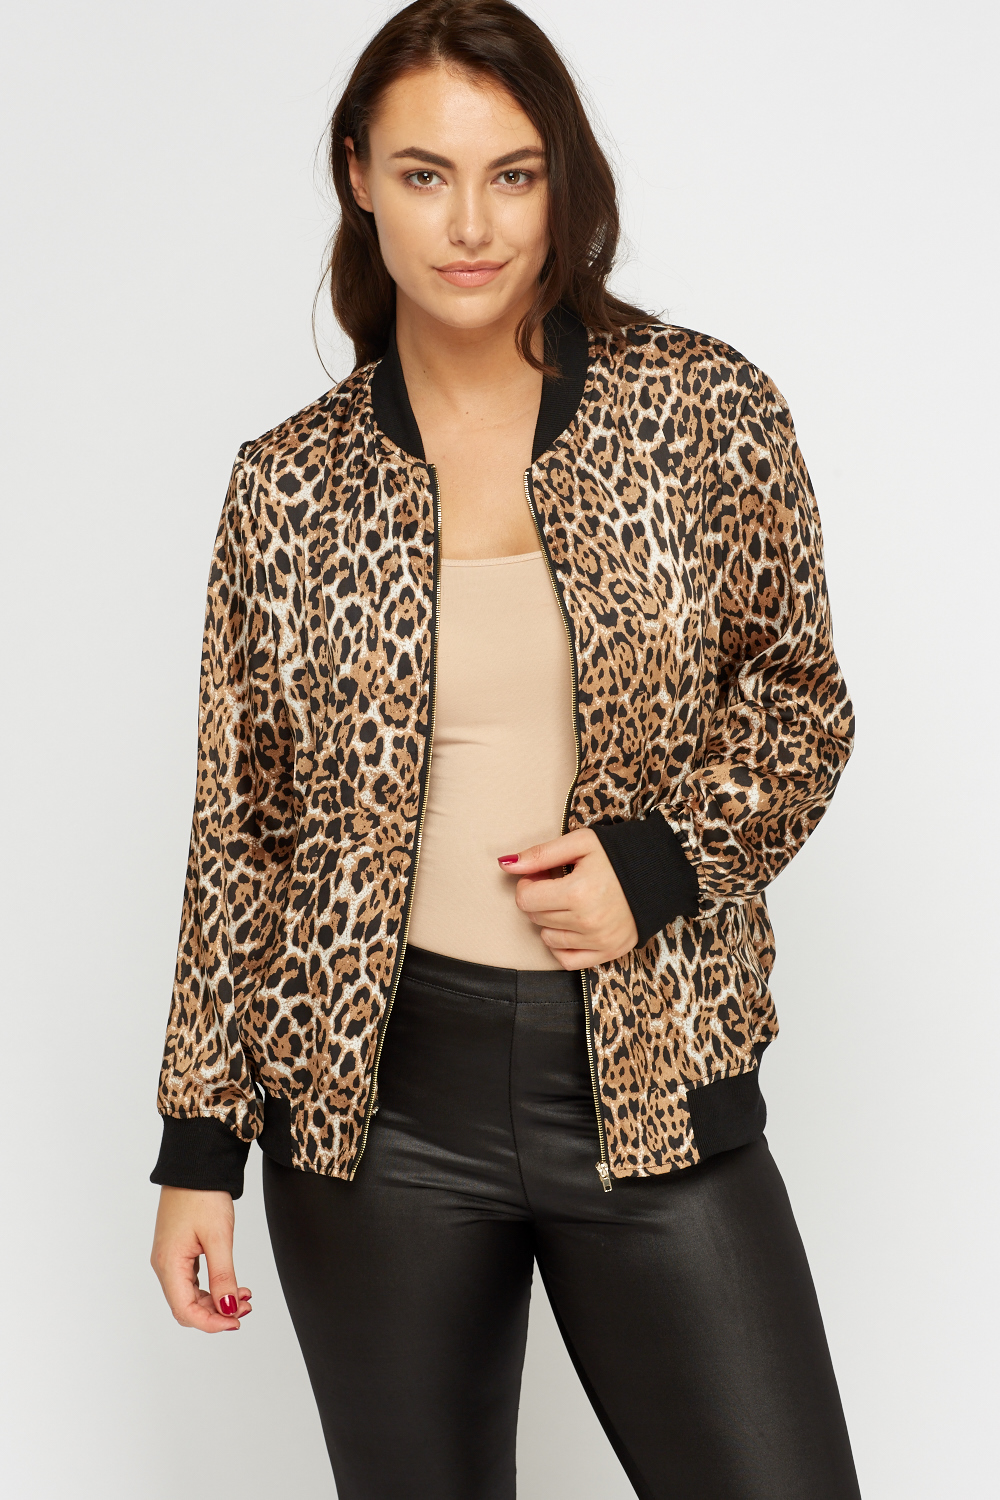 Leopard Print Zip Front Jacket - Just $7